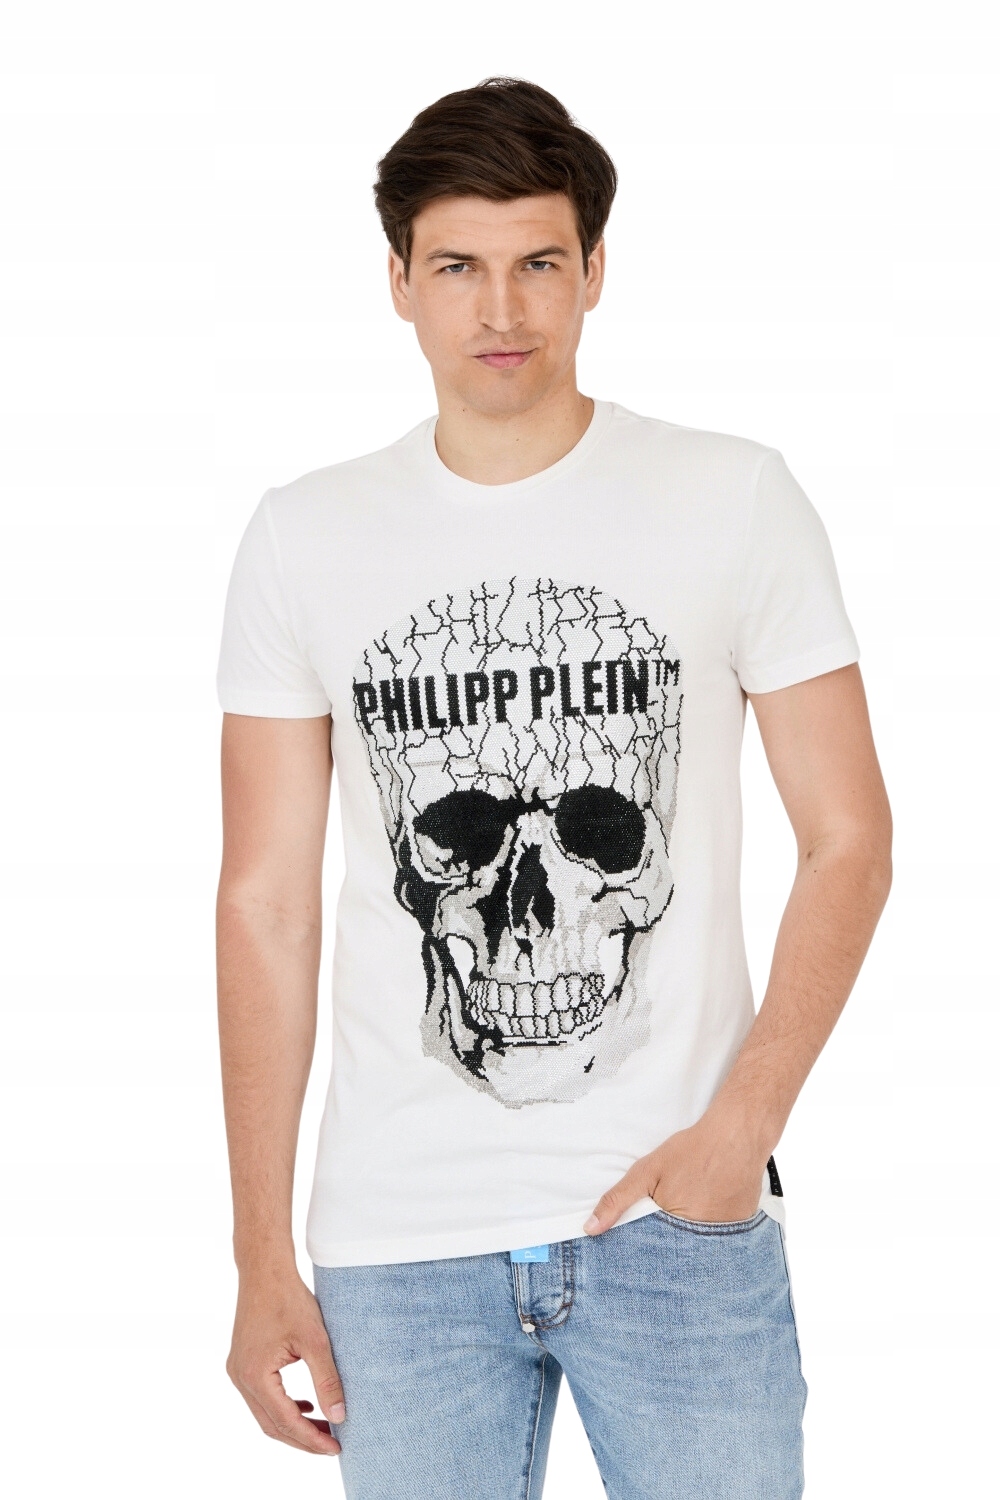 PHILIPP PLEIN Tričko biele s popraskanou lebkou XXL